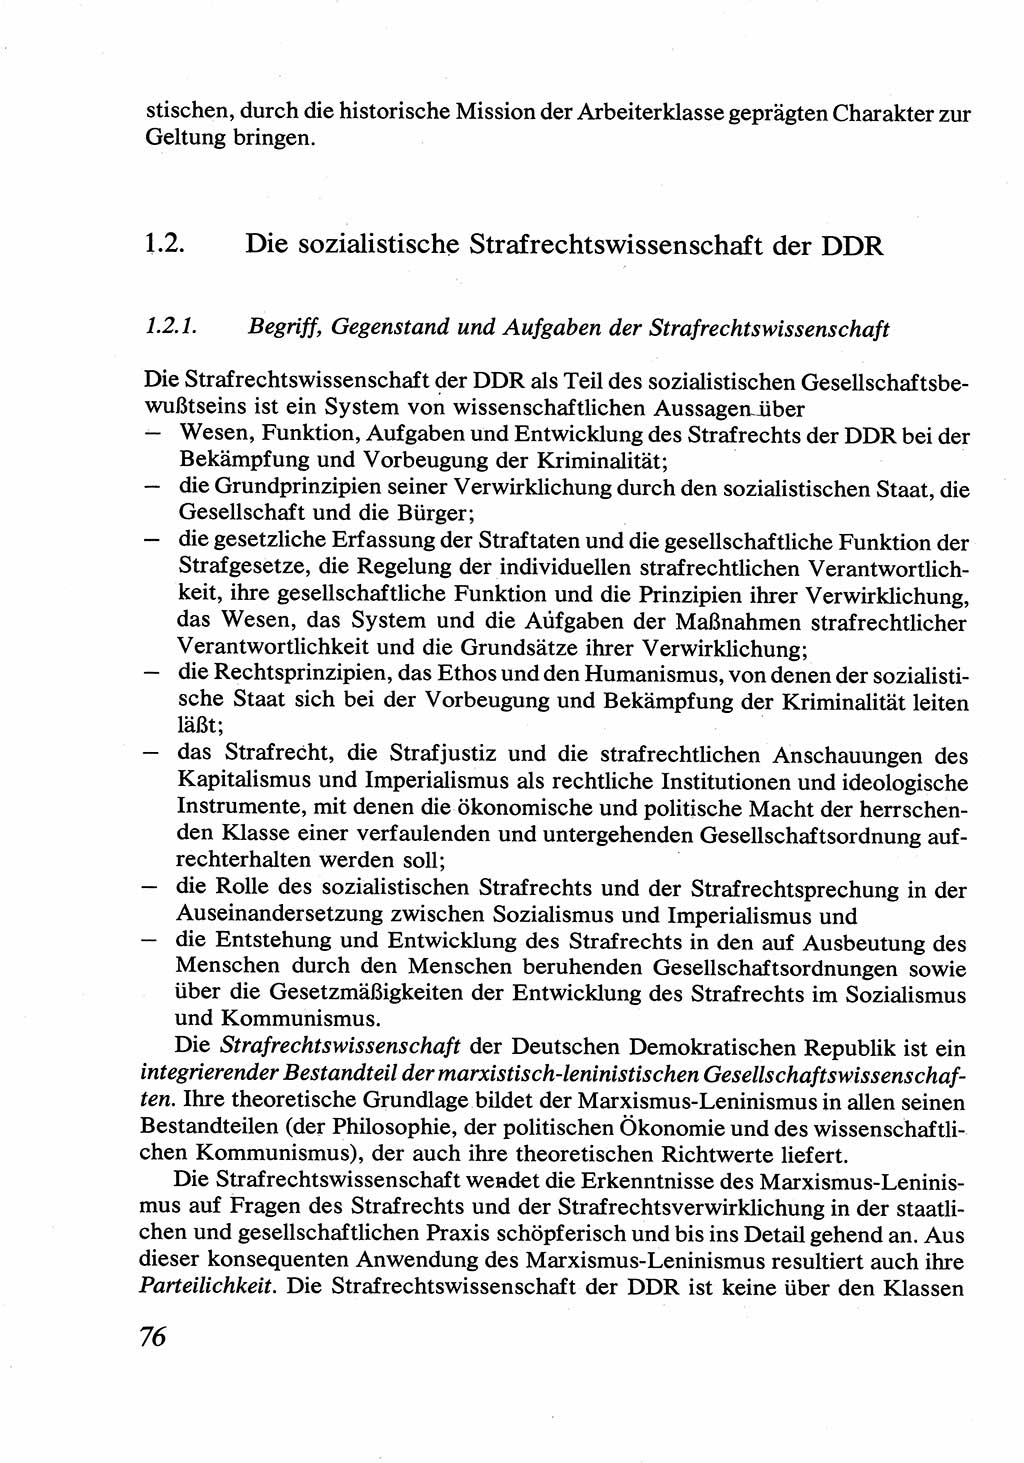 Strafrecht [Deutsche Demokratische Republik (DDR)], Allgemeiner Teil, Lehrbuch 1976, Seite 76 (Strafr. DDR AT Lb. 1976, S. 76)